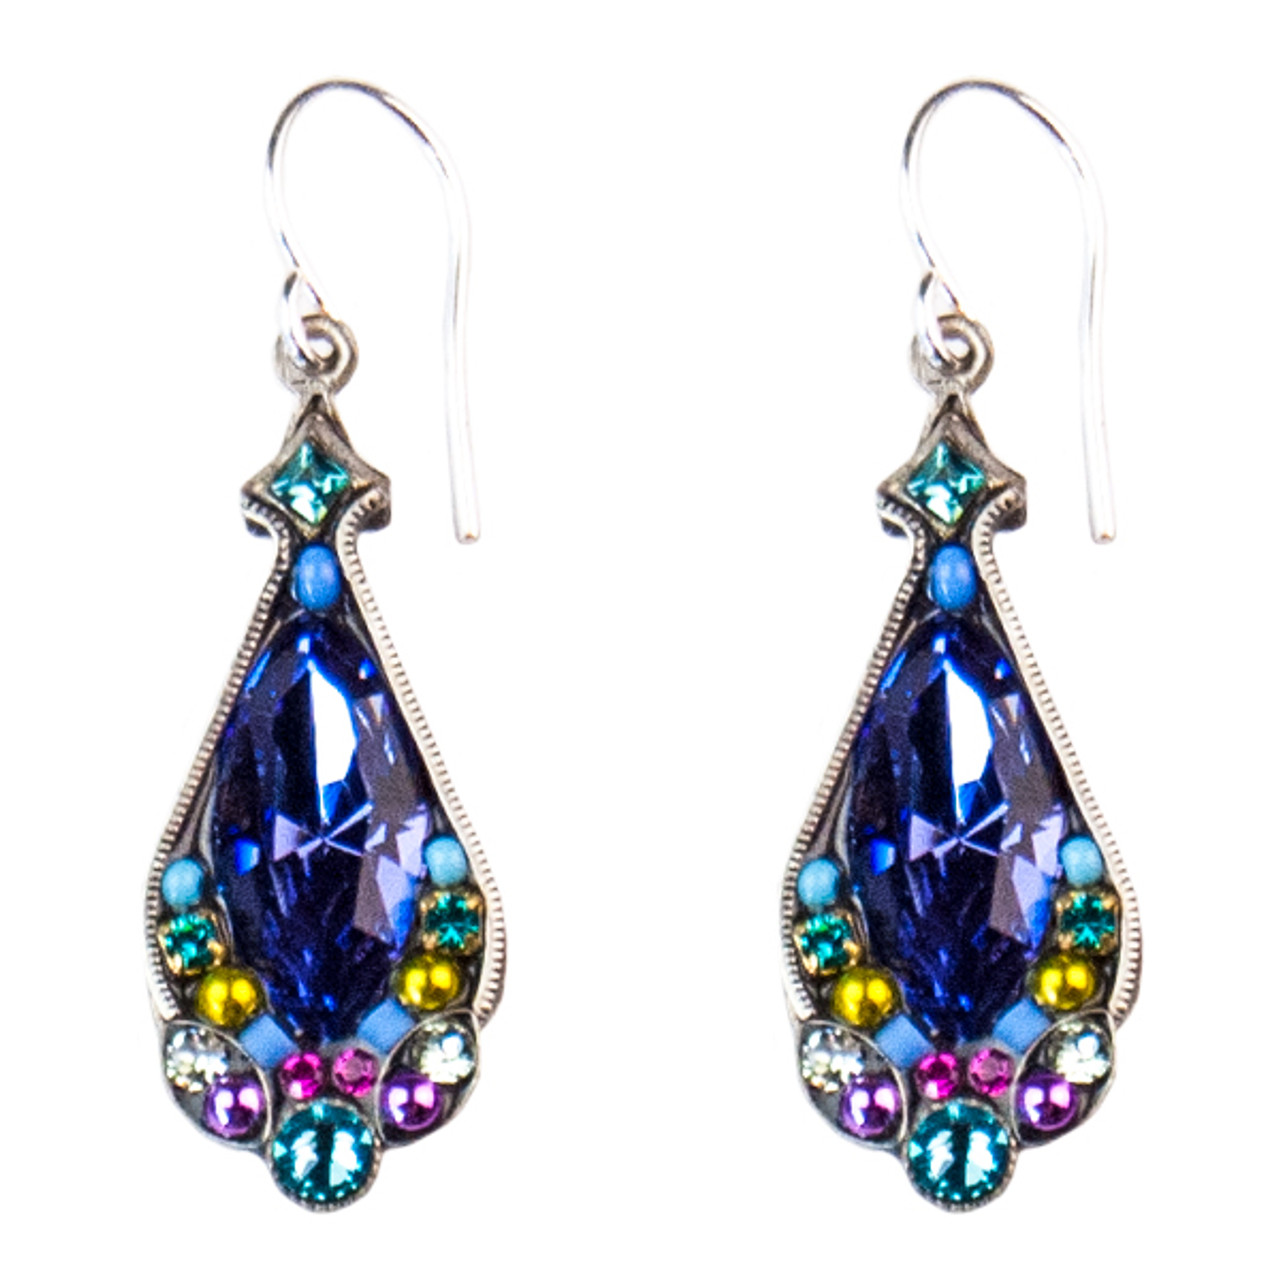 AB giant 6 inch rhinestone chandelier earrings | Bridal earrings  chandelier, Bridal party jewelry, Crystal drop earrings